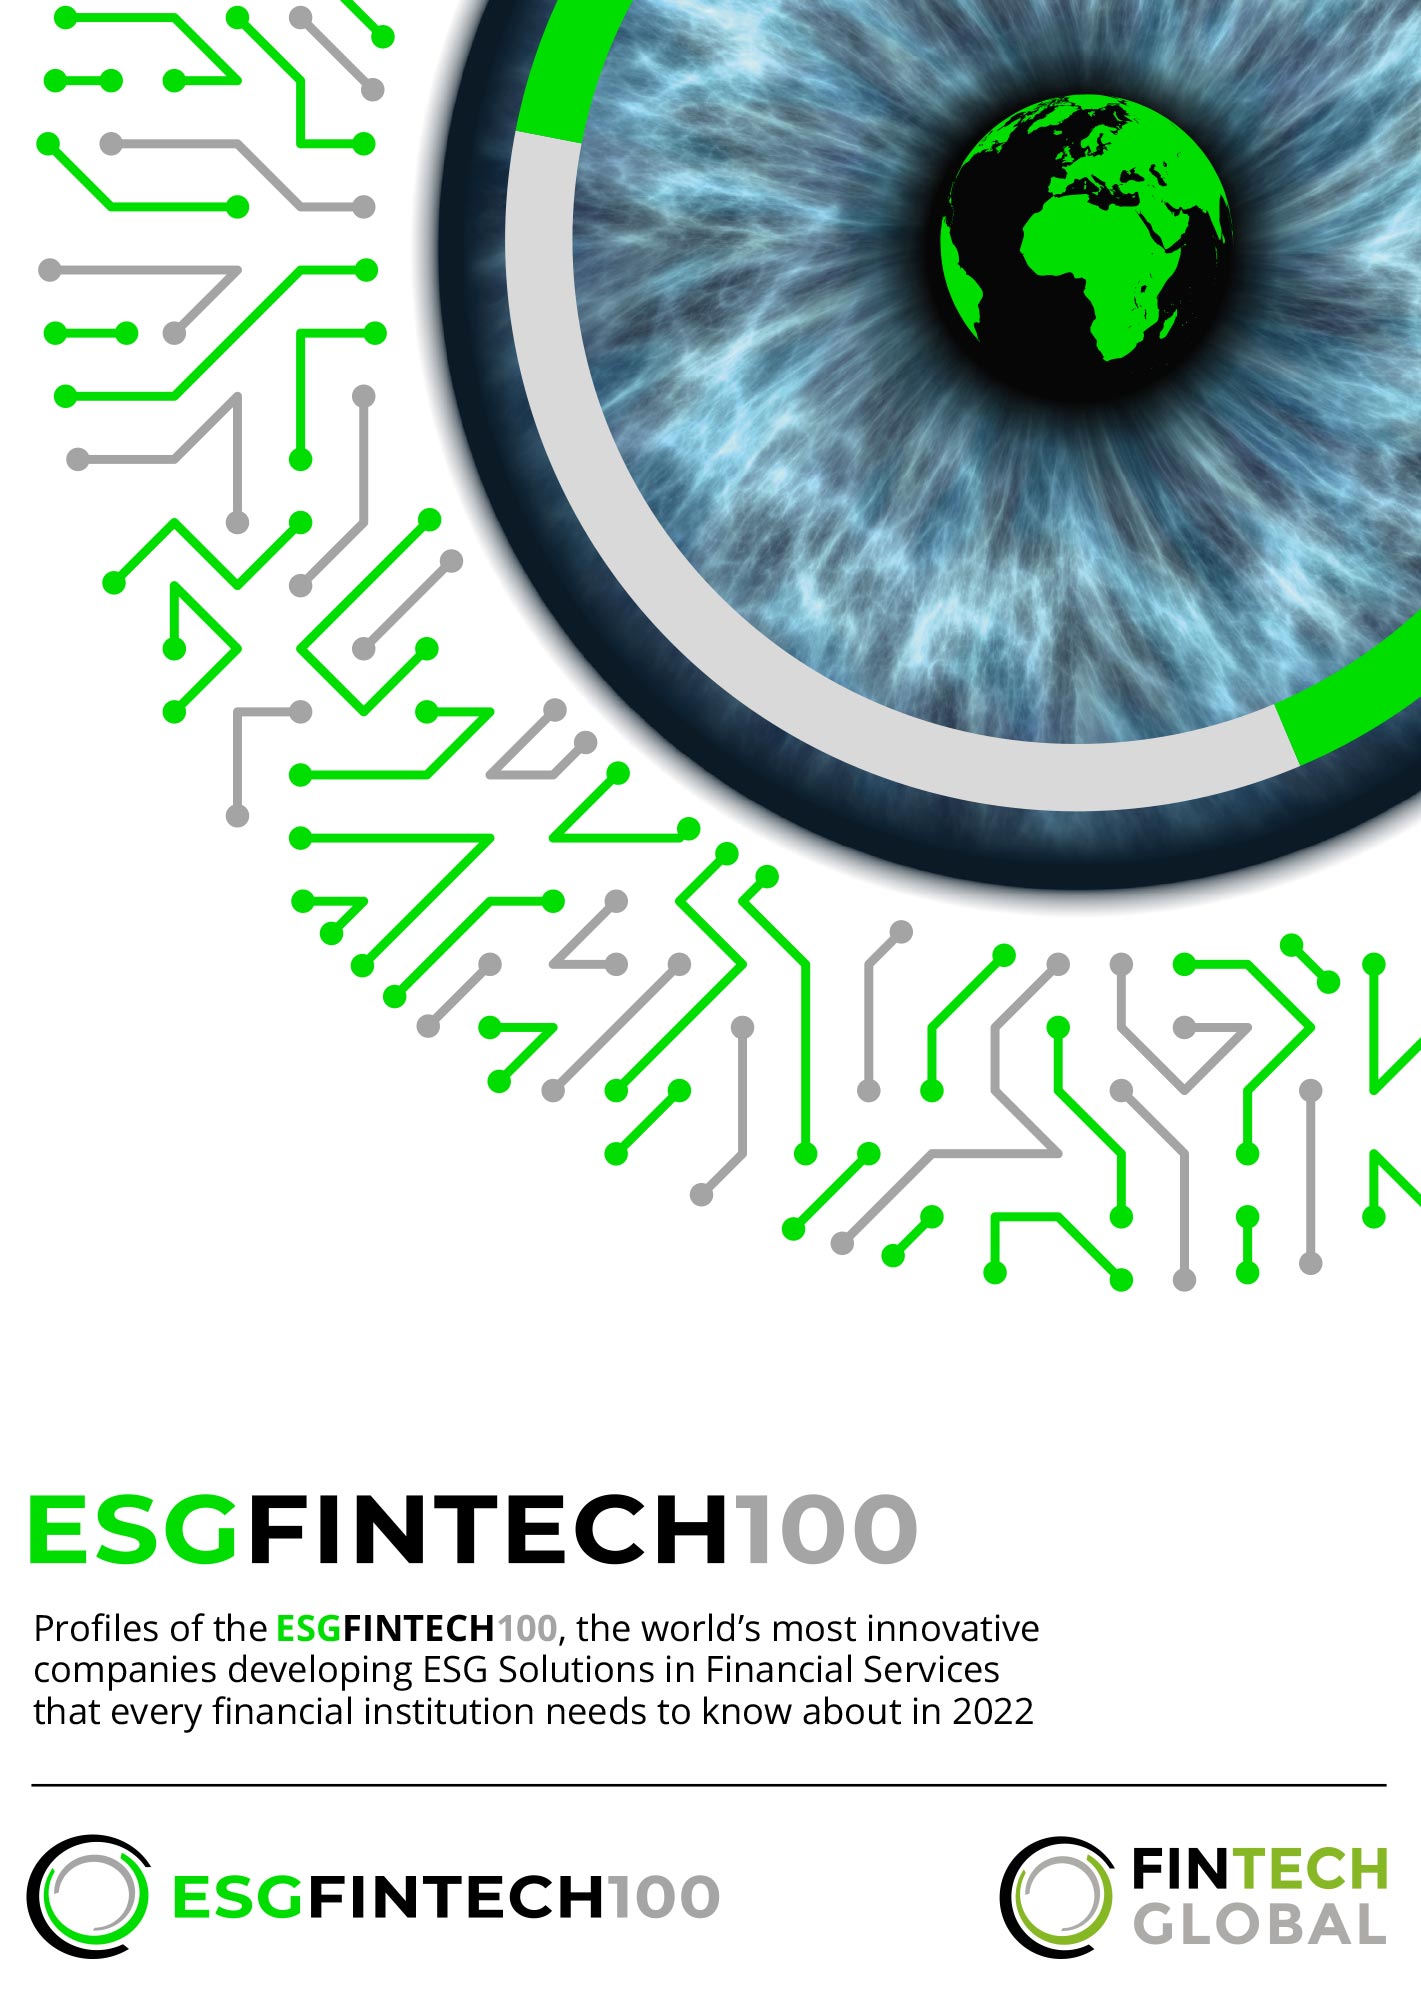 The ESG FinTech 100